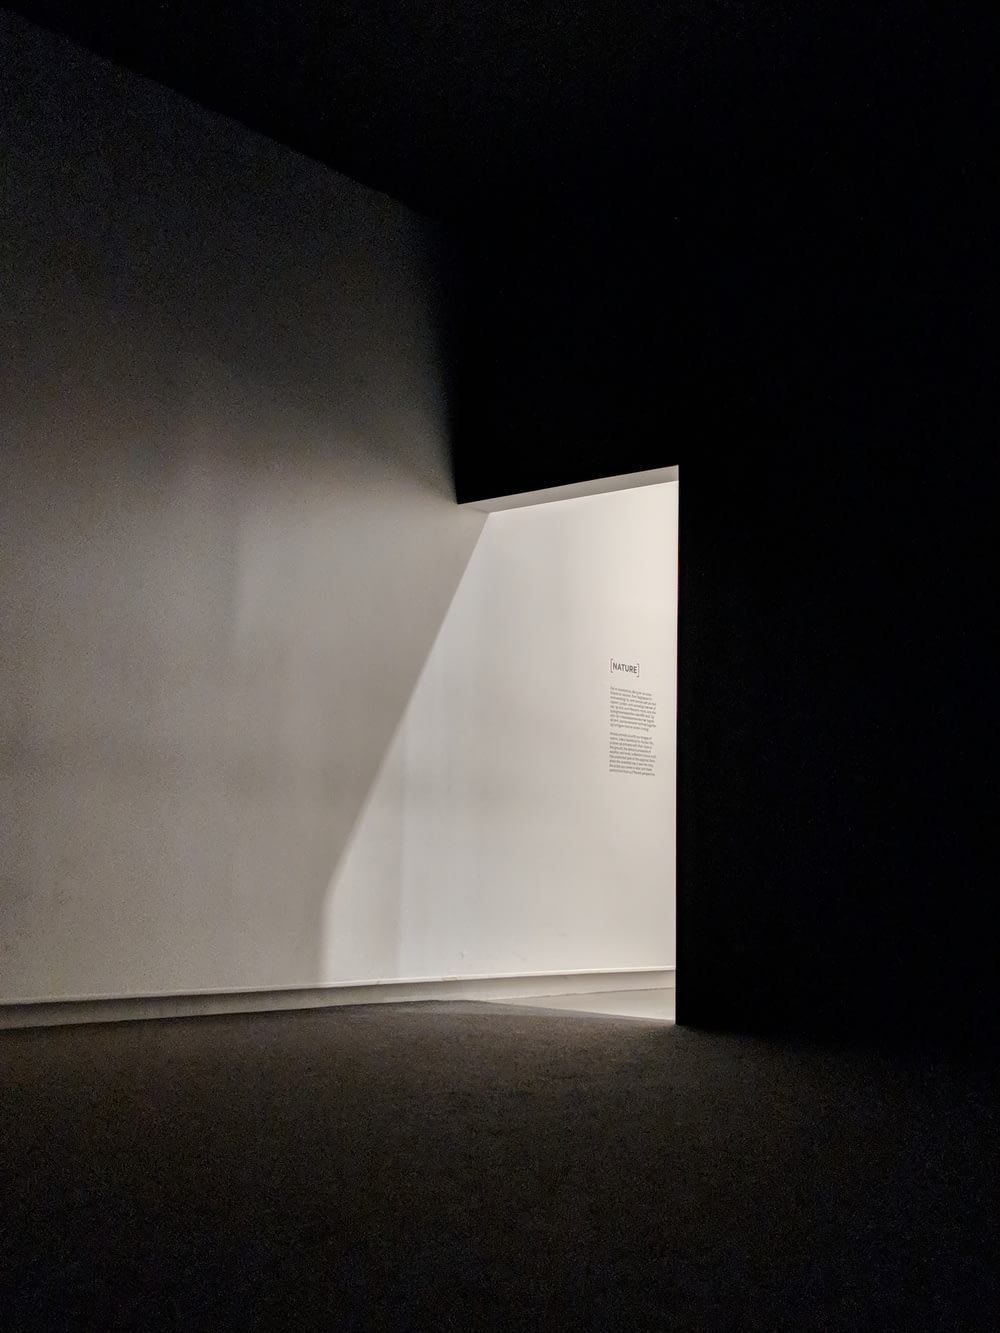 벽을 통해 들어오는 빛이 있는 빈 방